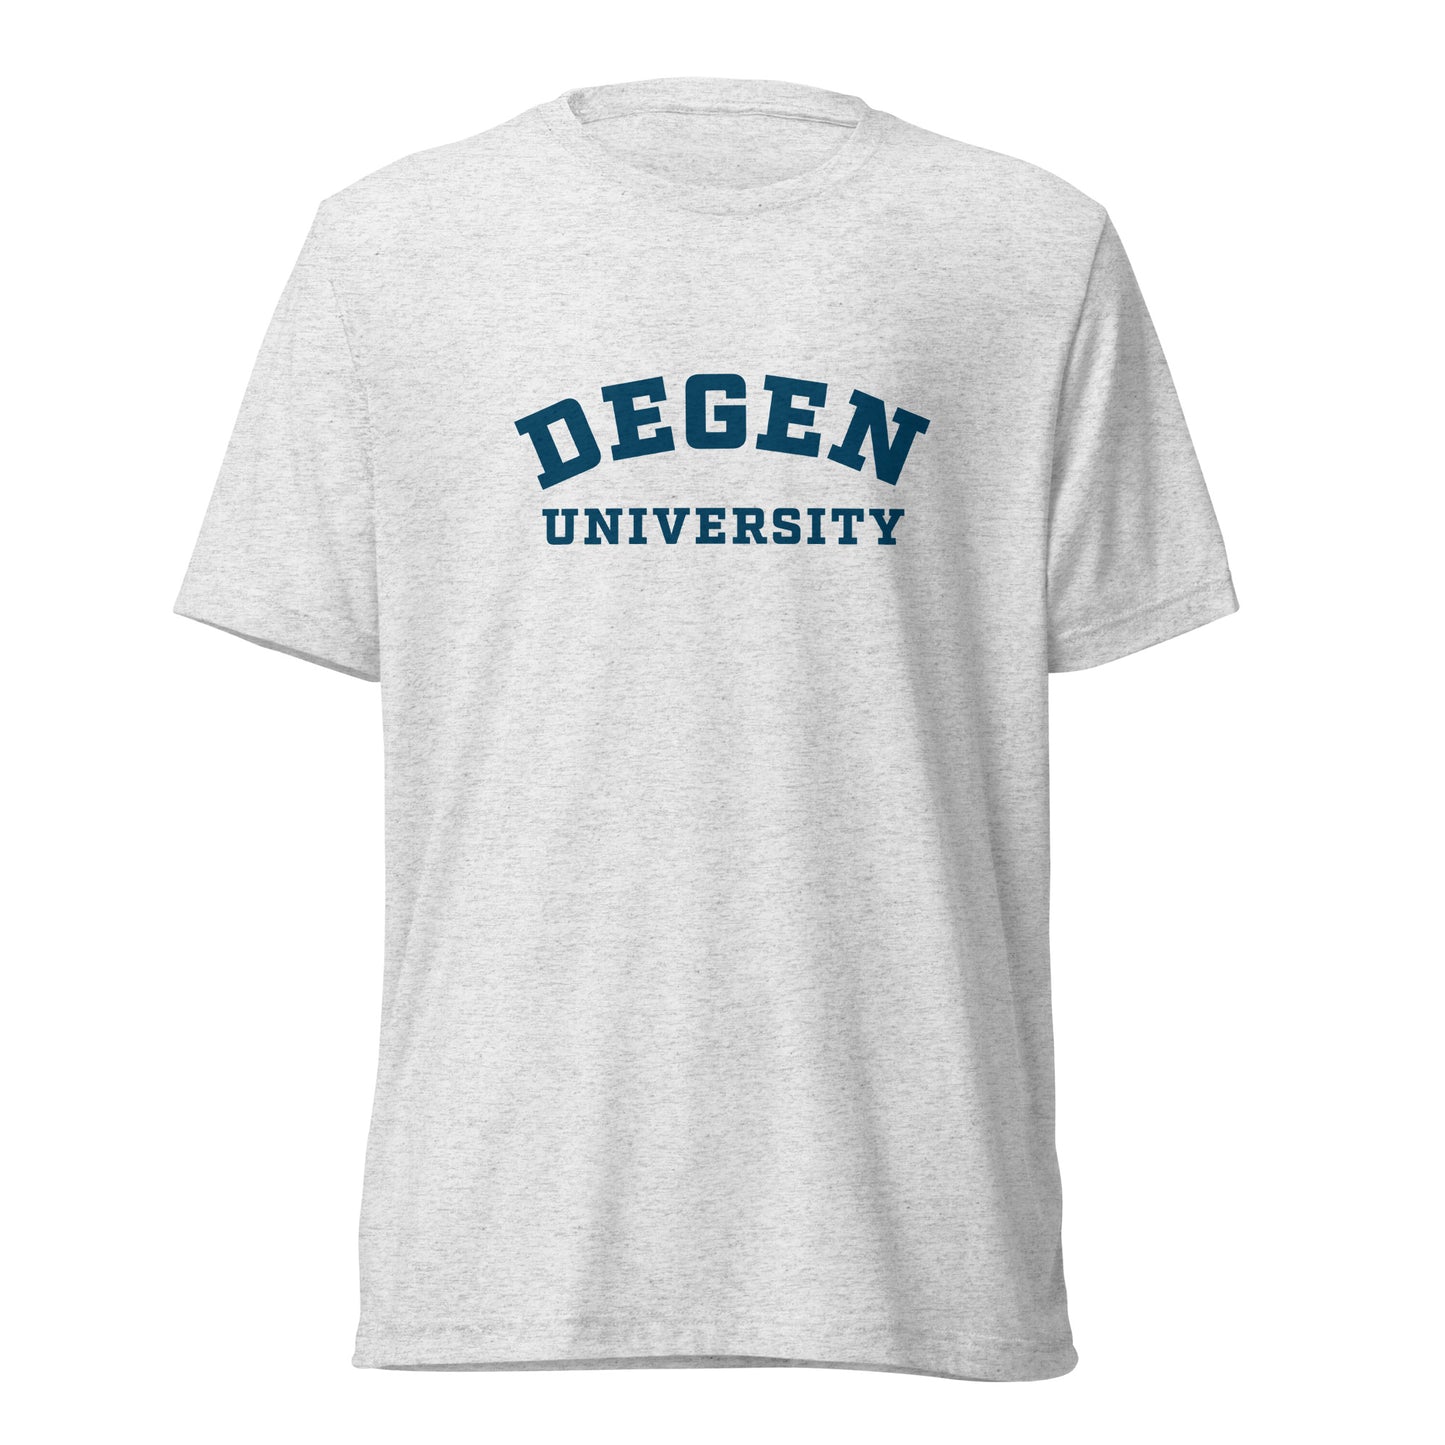 Degen University - Short sleeve t-shirt